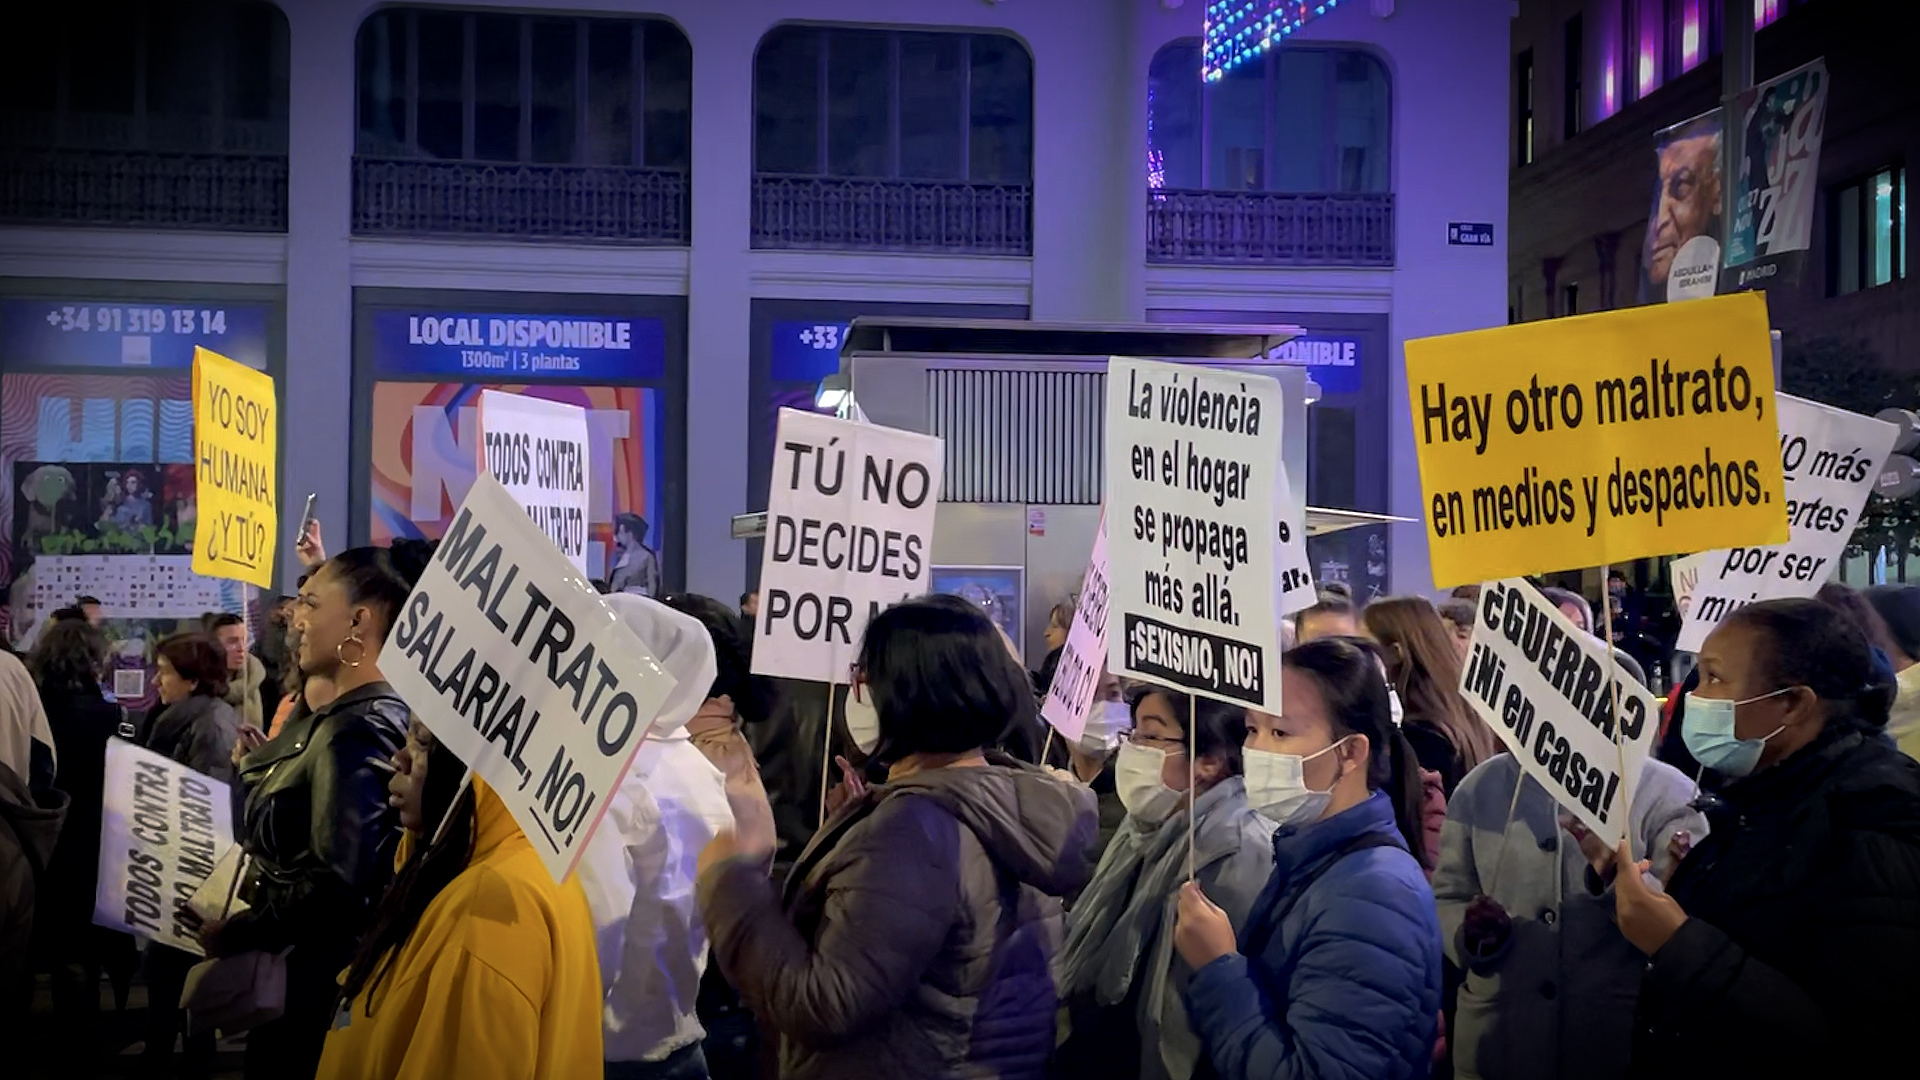 El Movimiento Feminista de Madrid llena las calles al grito de "el machismo mata"